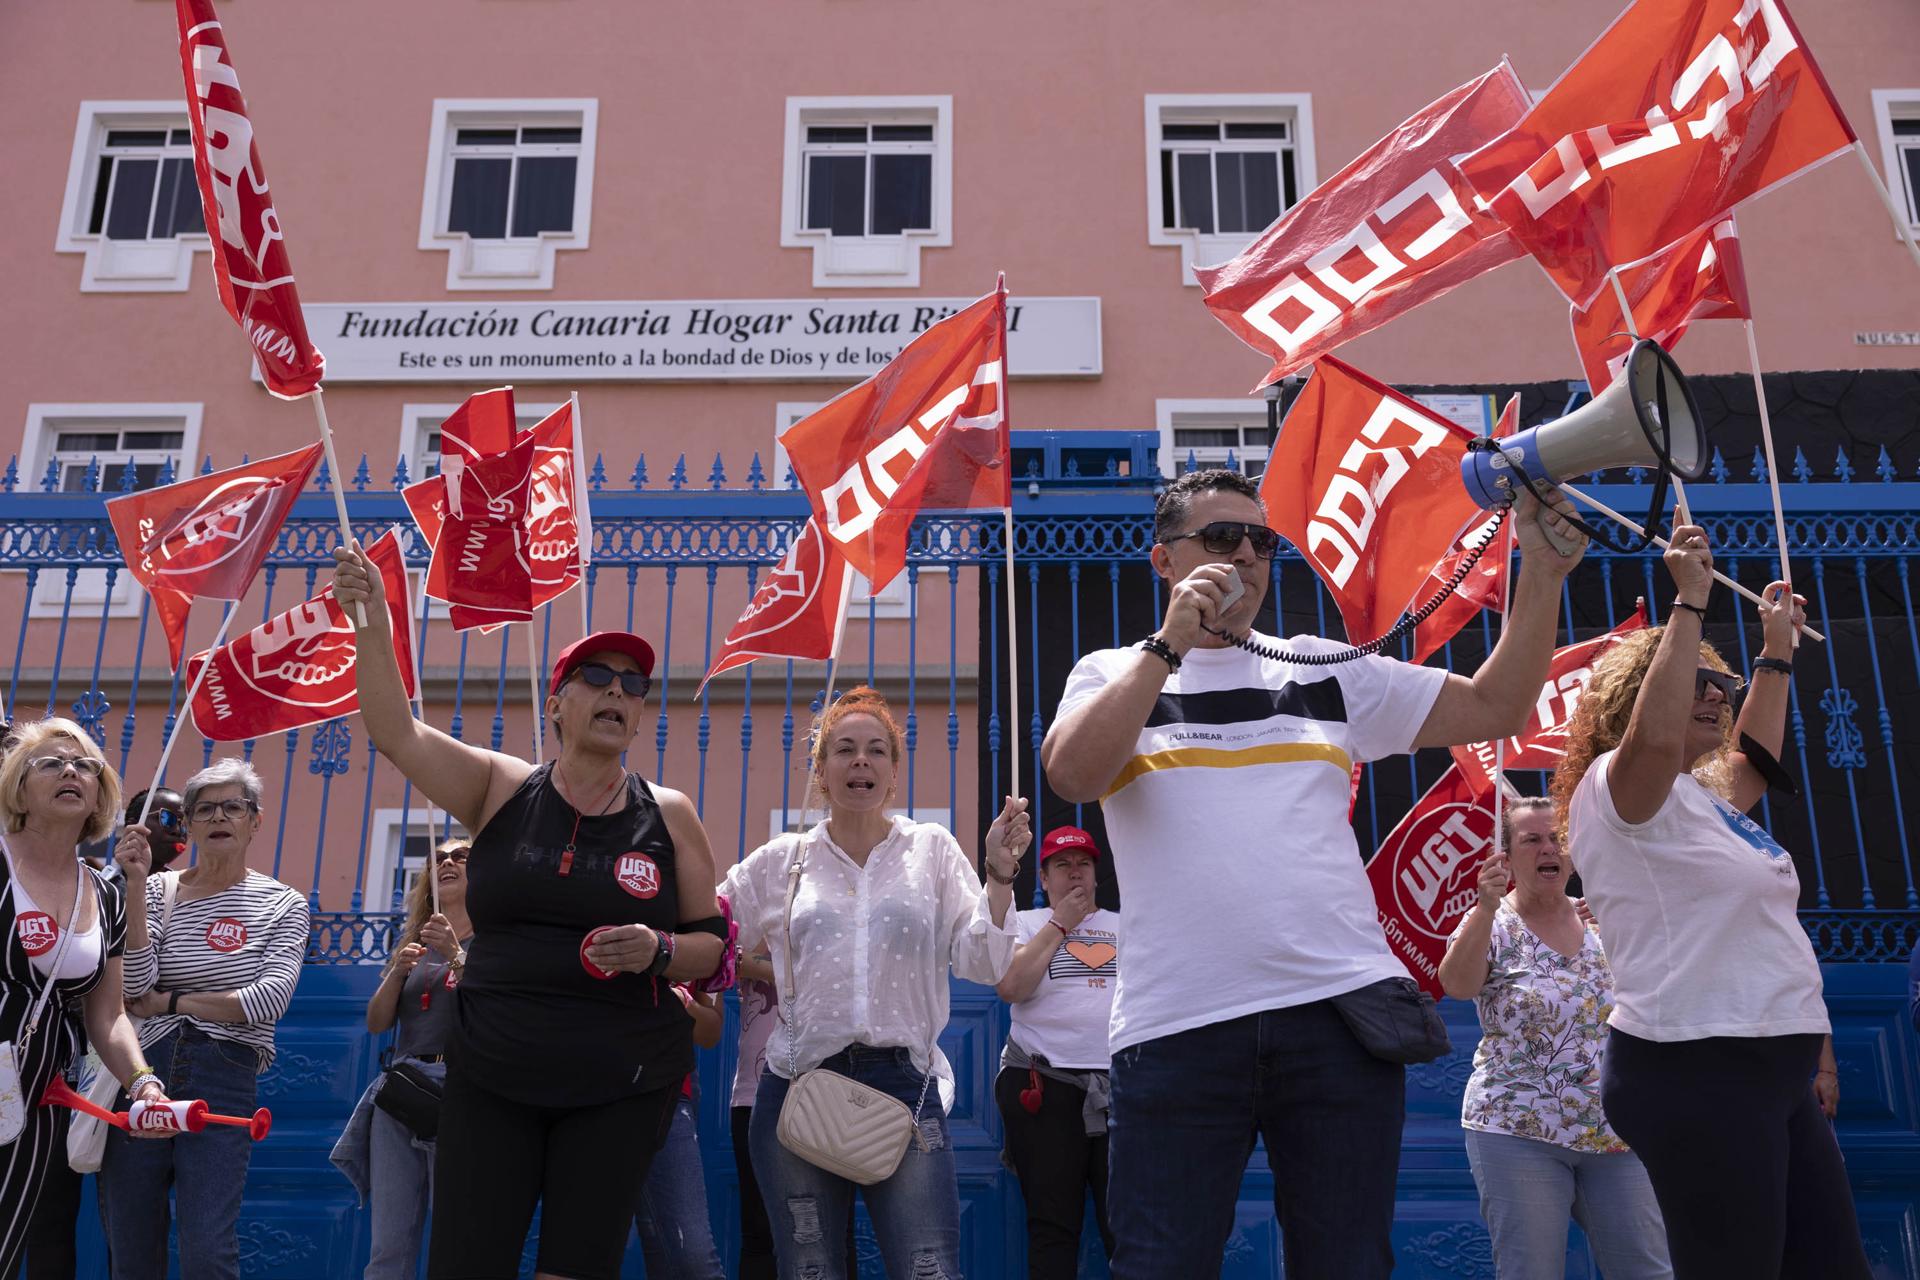 El comité de empresa de la Fundación Canaria Hogar Santa Rita se concentró este lunes para protestar por la gestión del centro en cuanto al pago de salarios en tiempo y forma, y para denunciar la pasividad de las administraciones para garantizar el buen funcionamiento de este centro sociosanitario